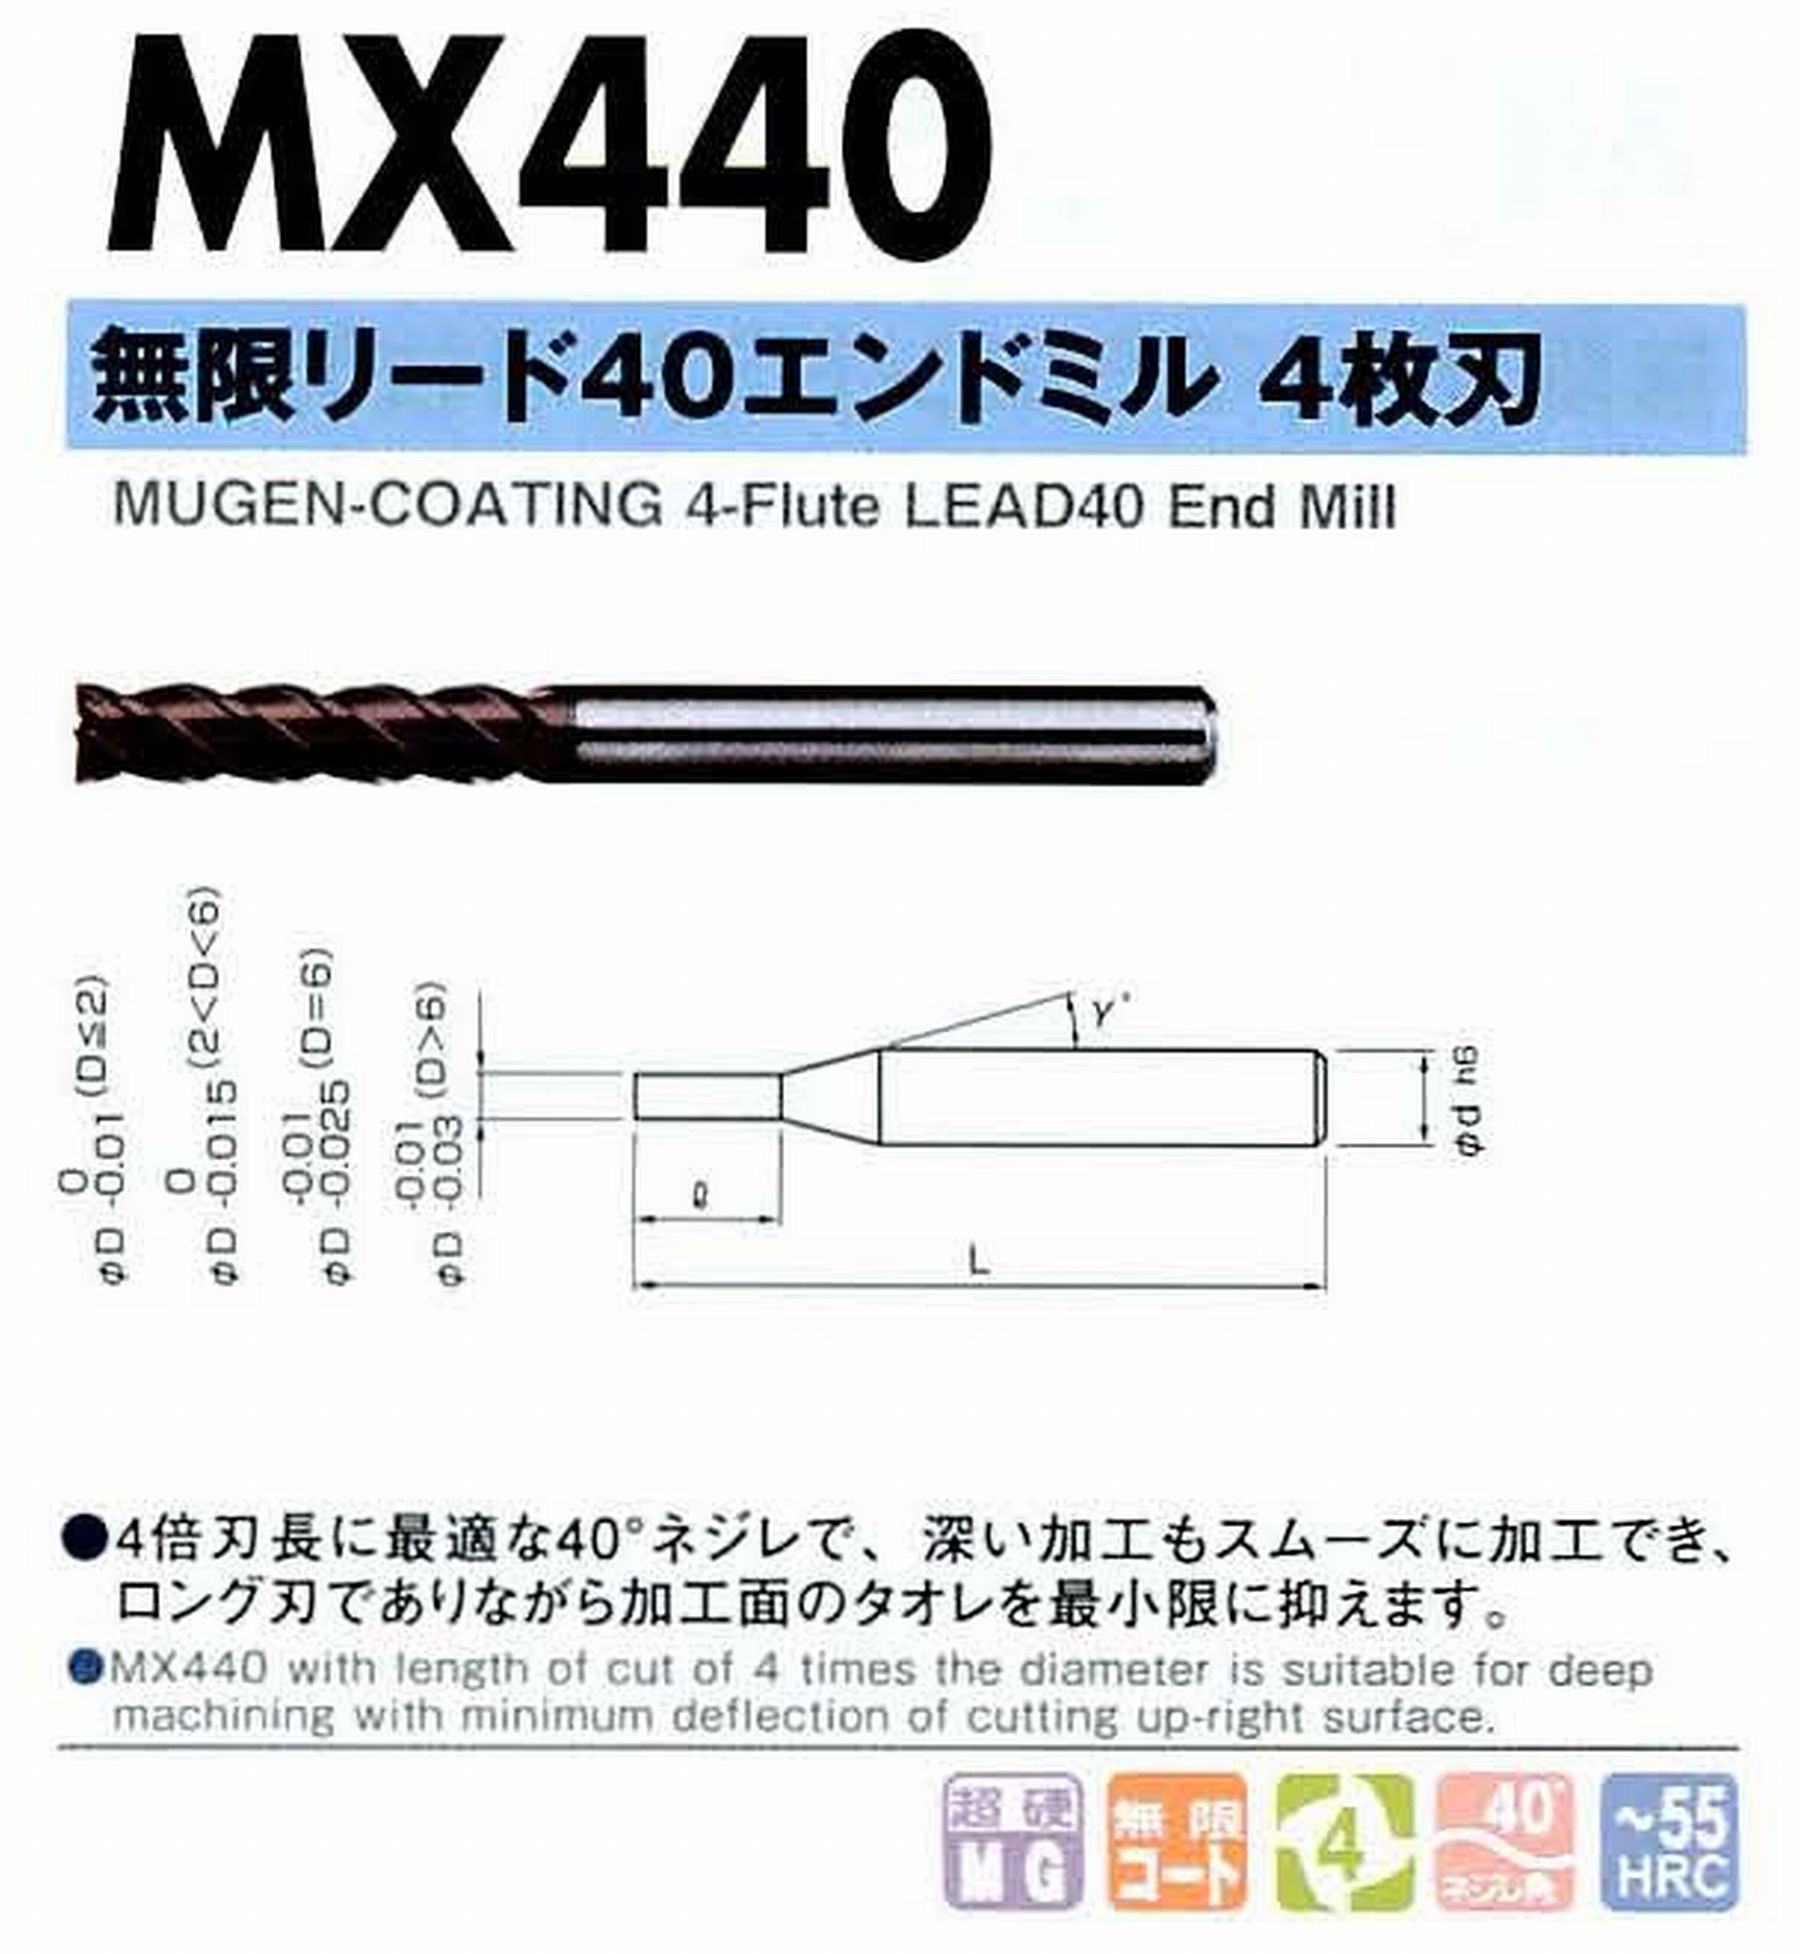 NS 日進工具 MX440 無限リード40エンドミル4枚刃 コードNO．08-00090-00100 刃径1 刃長4 首角12° シャンク径4mm 全長45